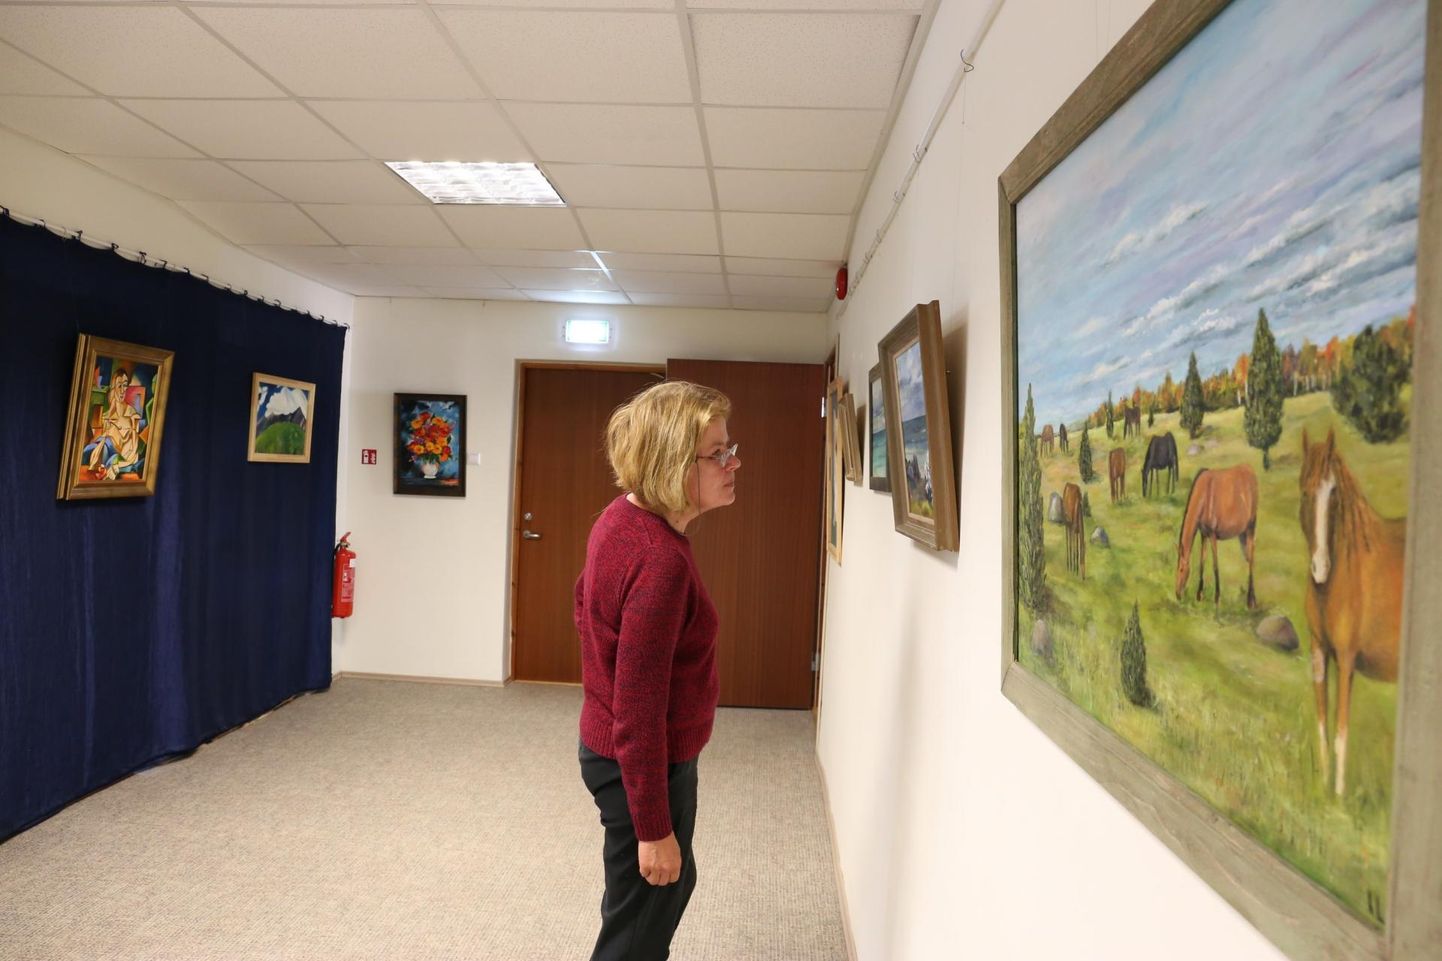 Lihula raamatukogus on avatud sel õppeaastal valminud kohaliku kunstikooli täiskasvanute maalide näitus.